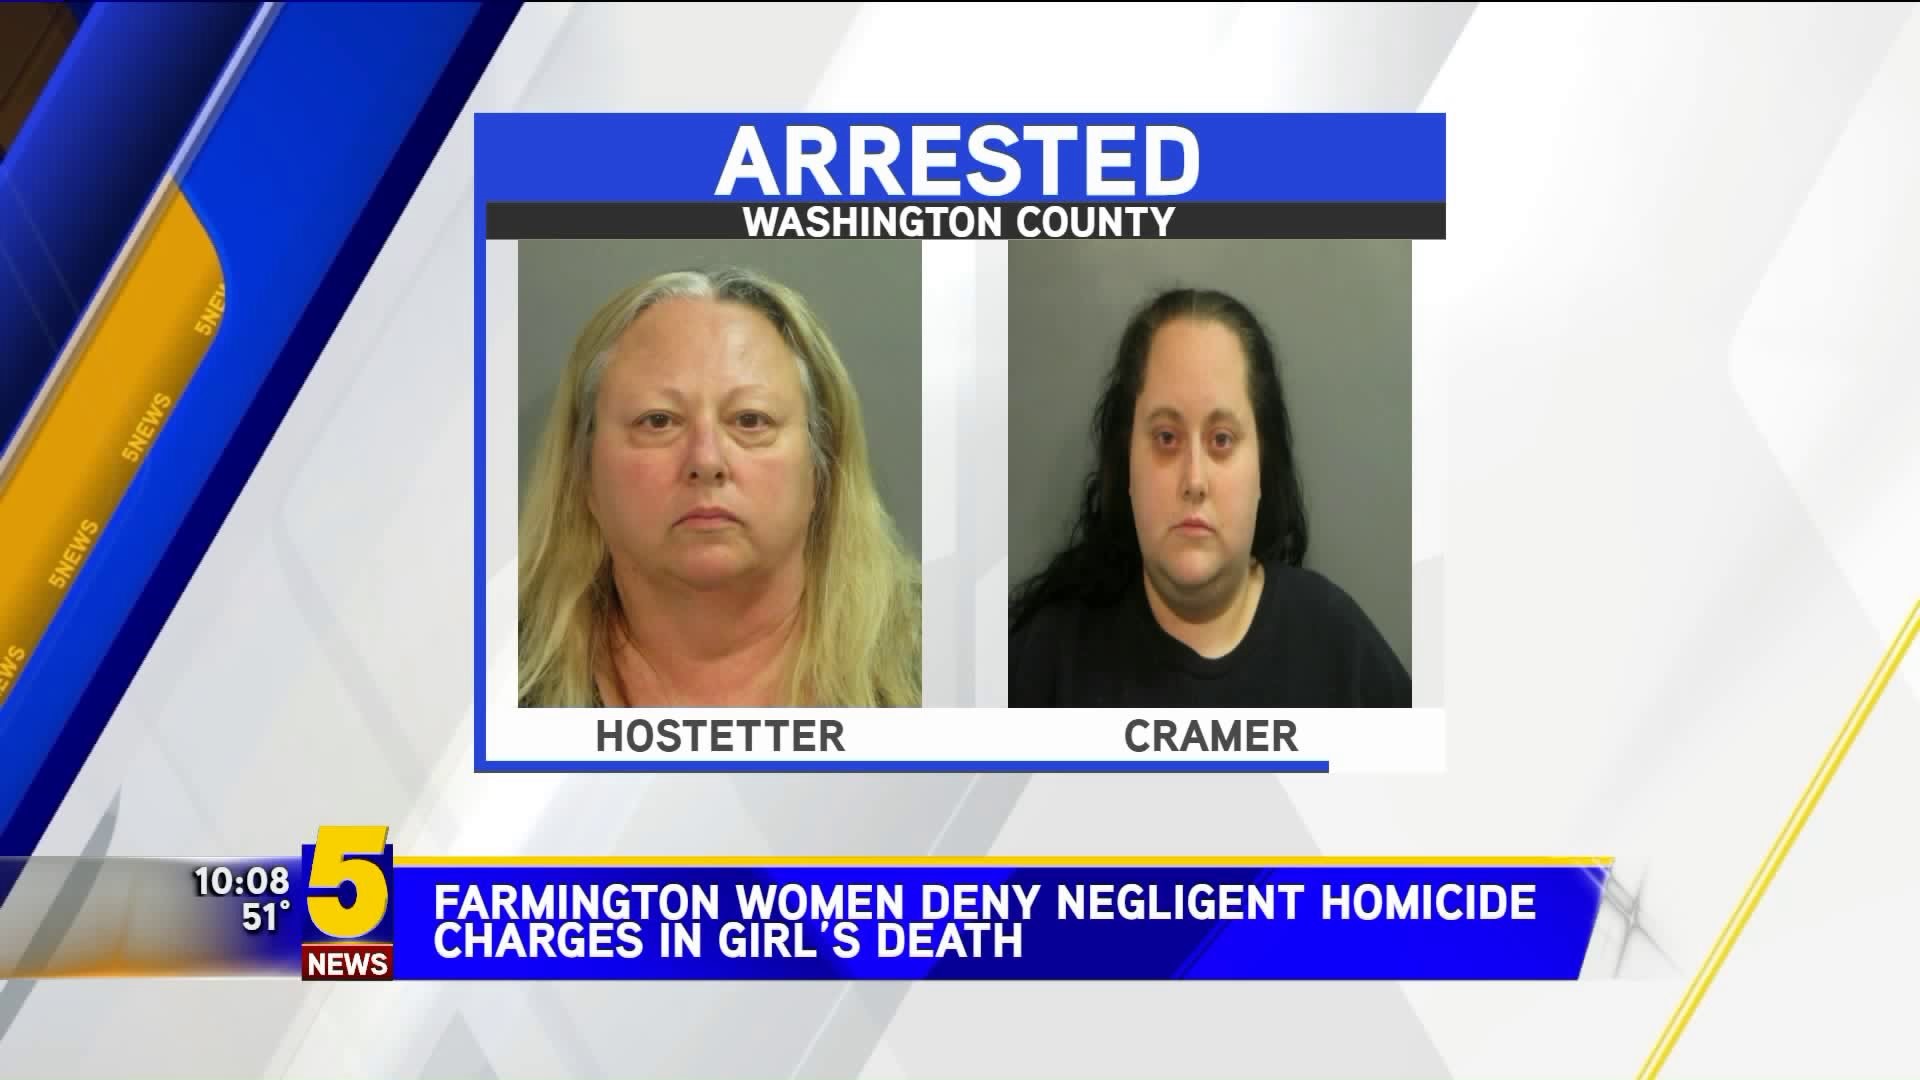 Farmington Women Deny Negligent Homicide Charges